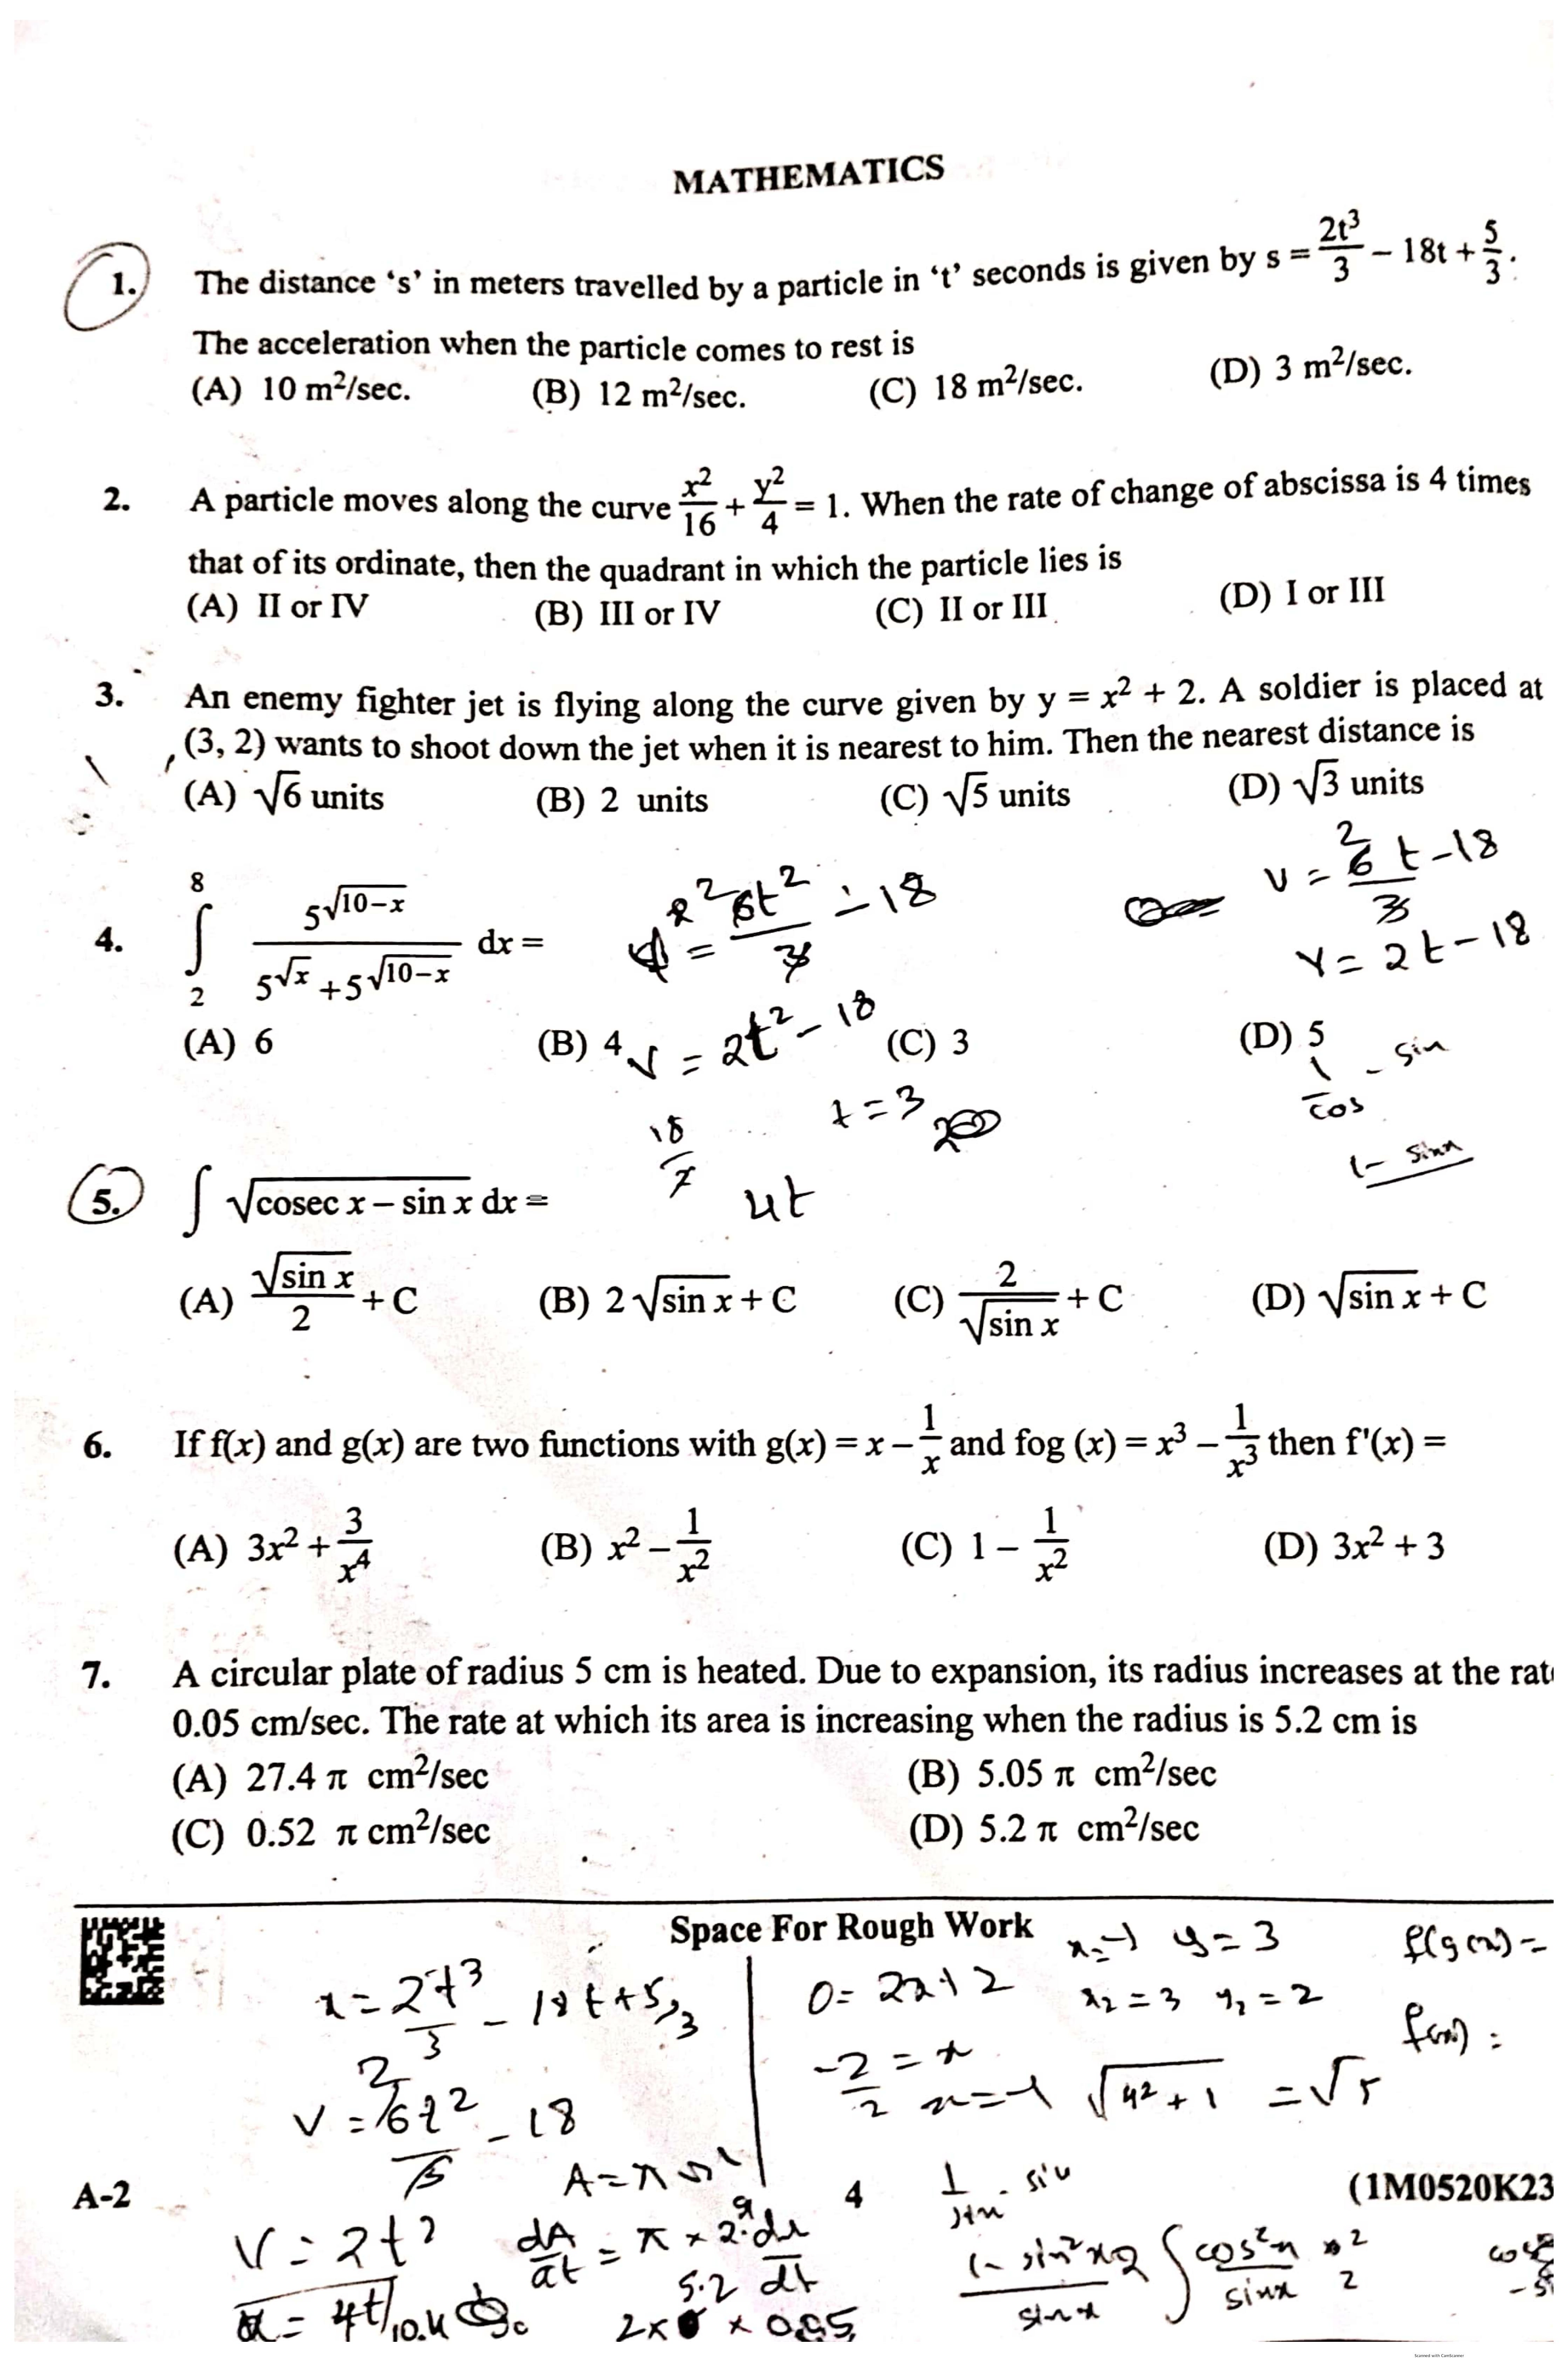 KCET 2023 Mathematics Set A-2 Question Paper - Page 1